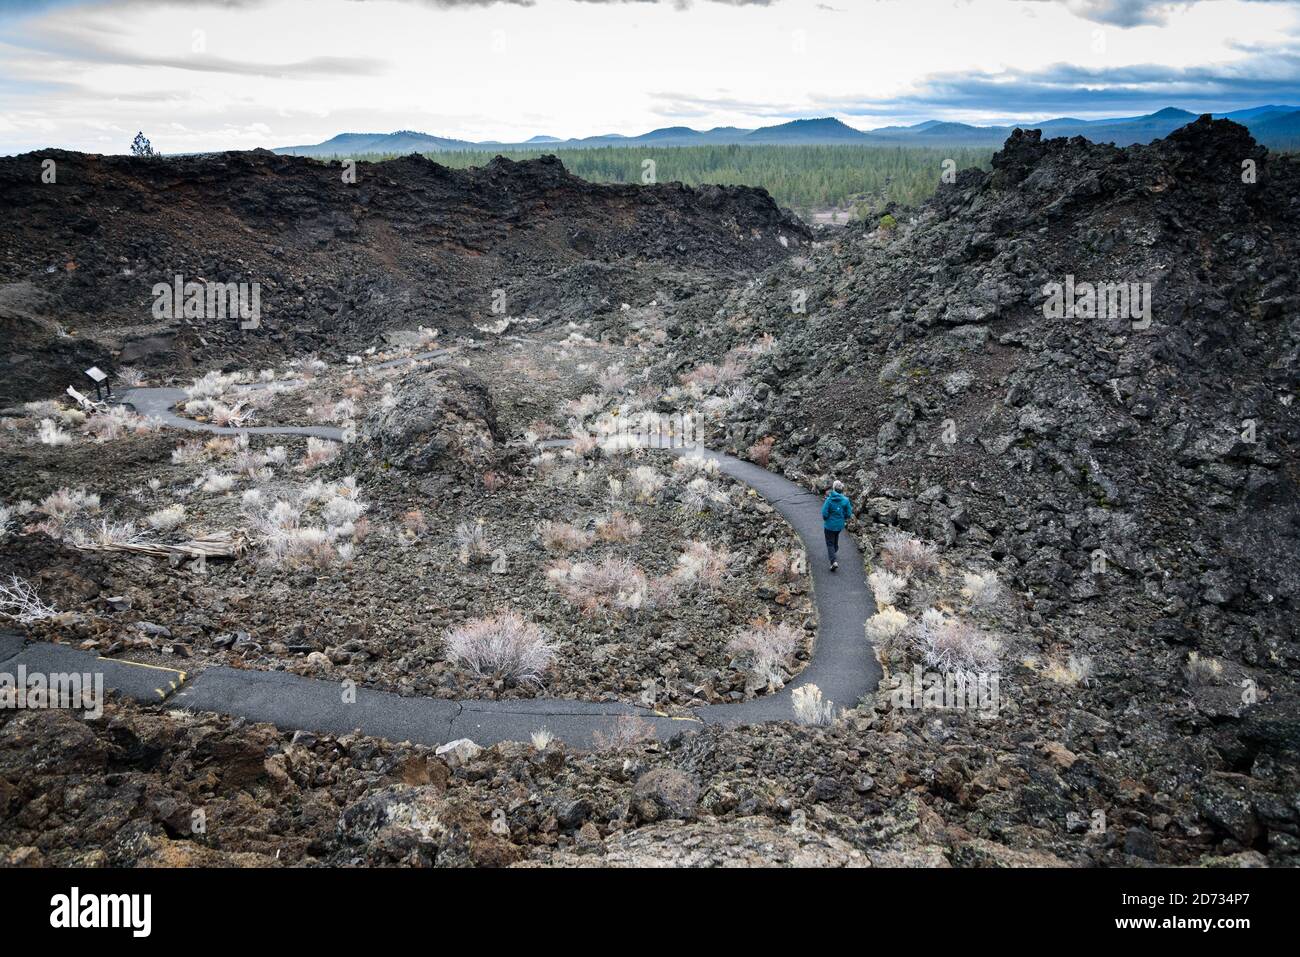 Los visitantes caminan por los campos de lava, tierras de lava, Monumento volcánico Nacional Newberry, Bend, Oregon, Deschutes National Forest, EE.UU. Foto de stock